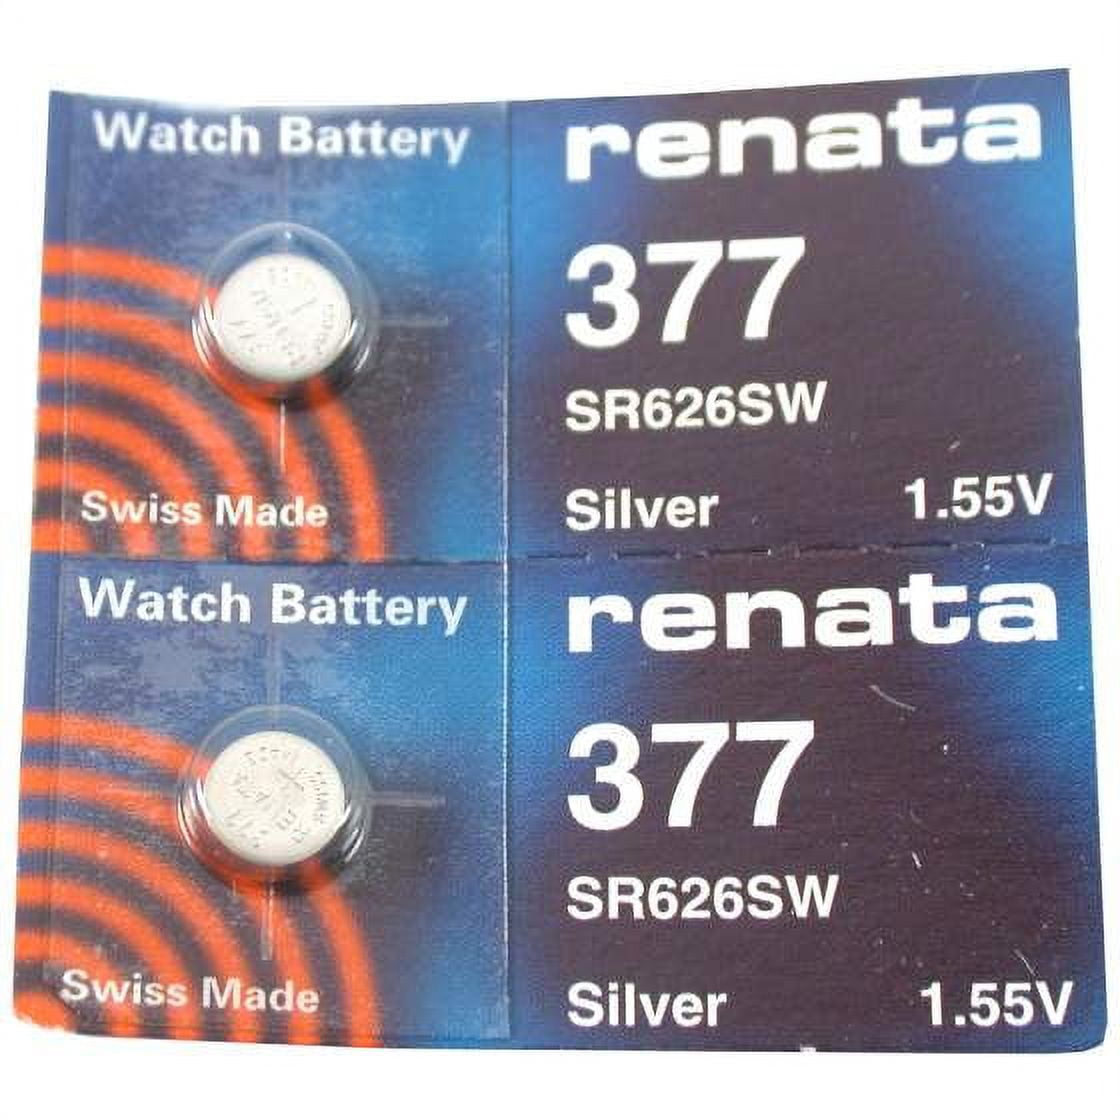 Renata 377 4pk Watch Battery - 377/376, SR626SW, 280-39, GS4